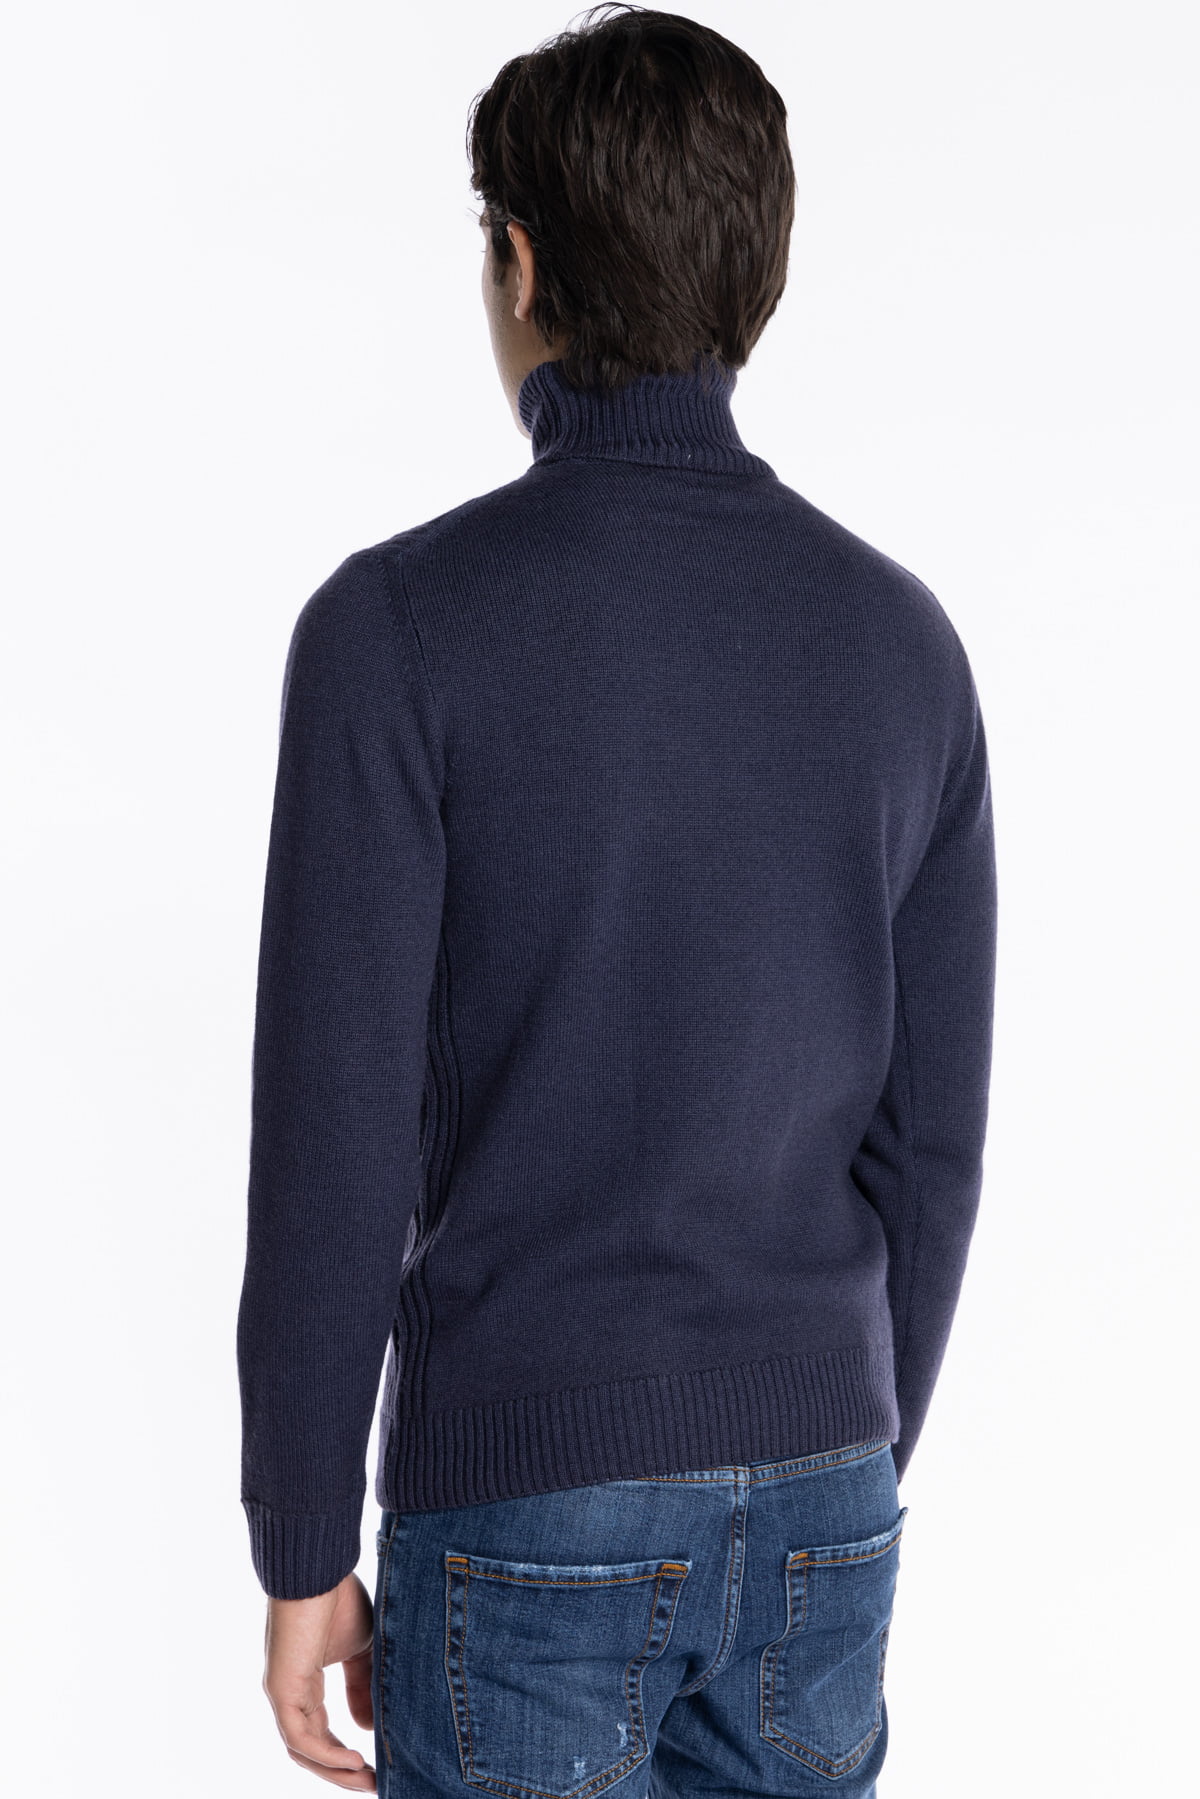 Maglione da uomo collo alto Blu pura lana con trame interne ai lati maniche lunghe